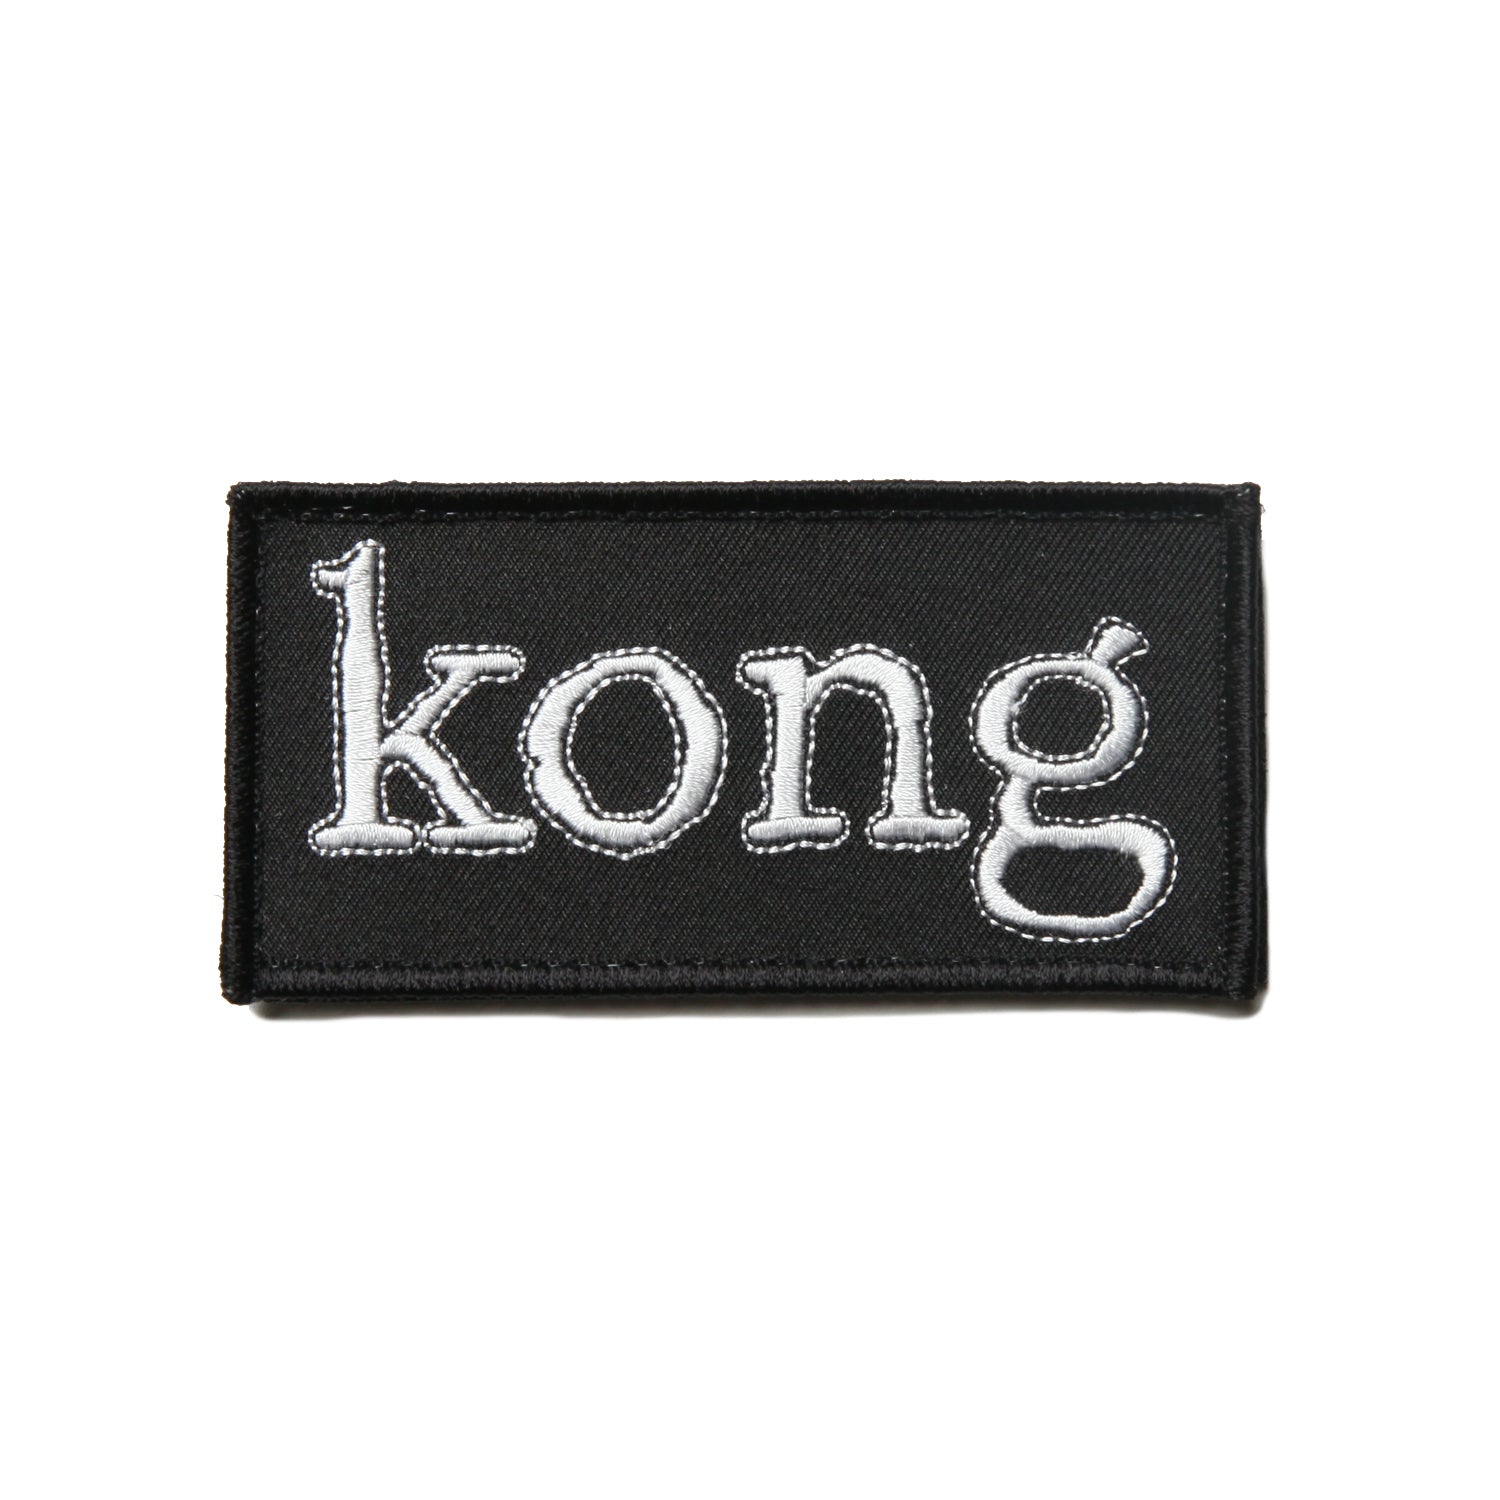 Kong Box Logo Velcro Patch Black